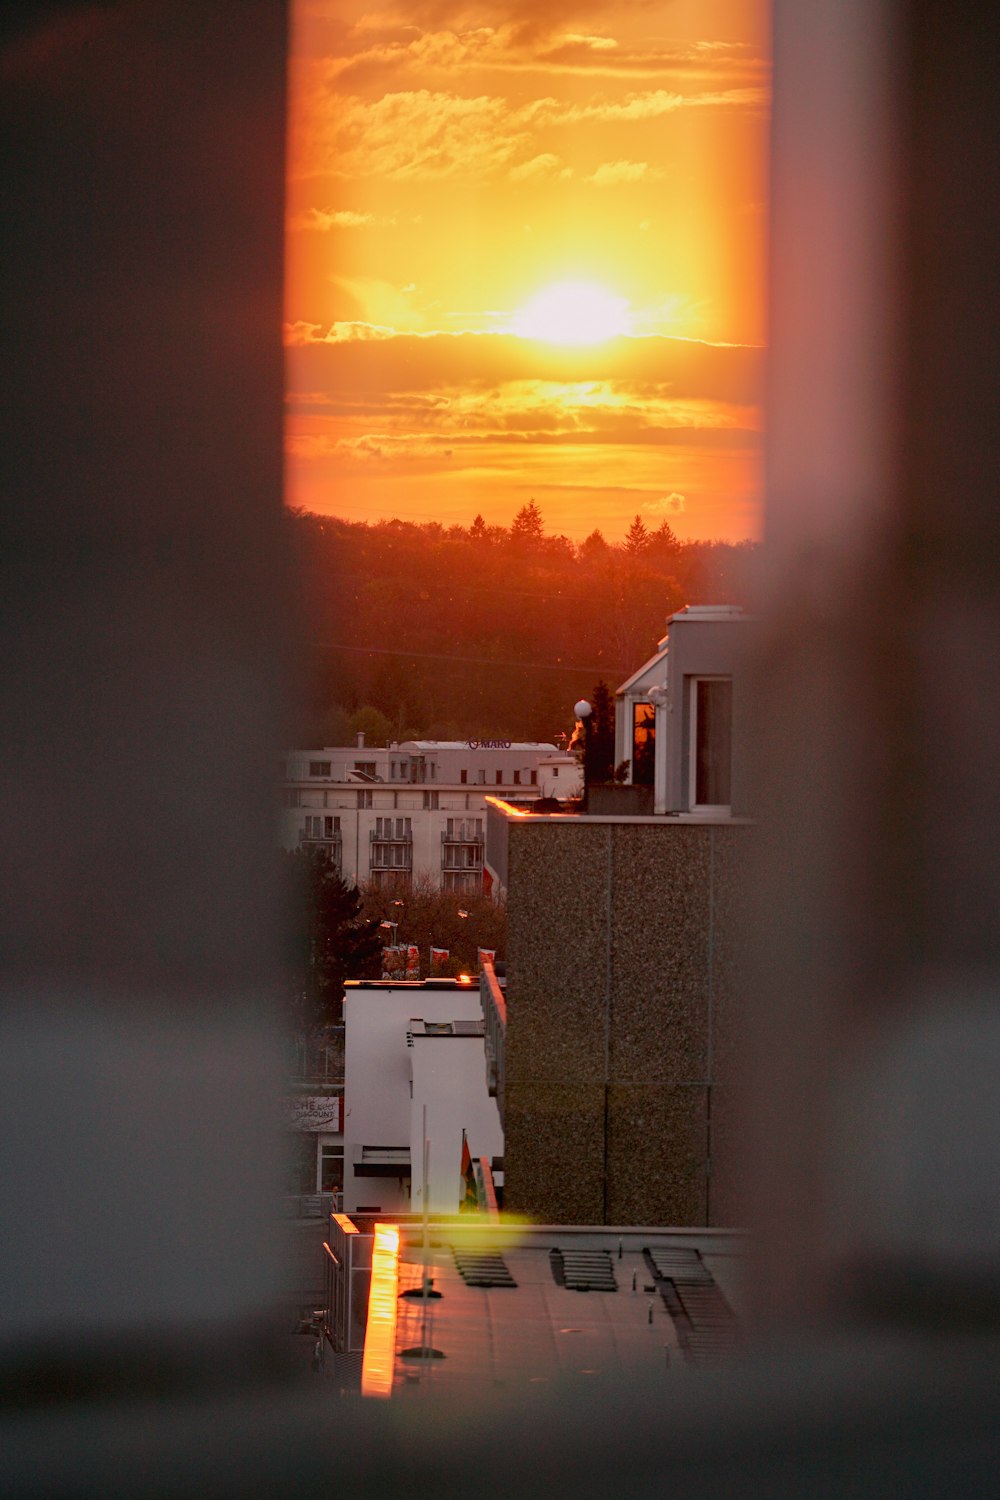 Le soleil se couche sur une ville depuis une fenêtre